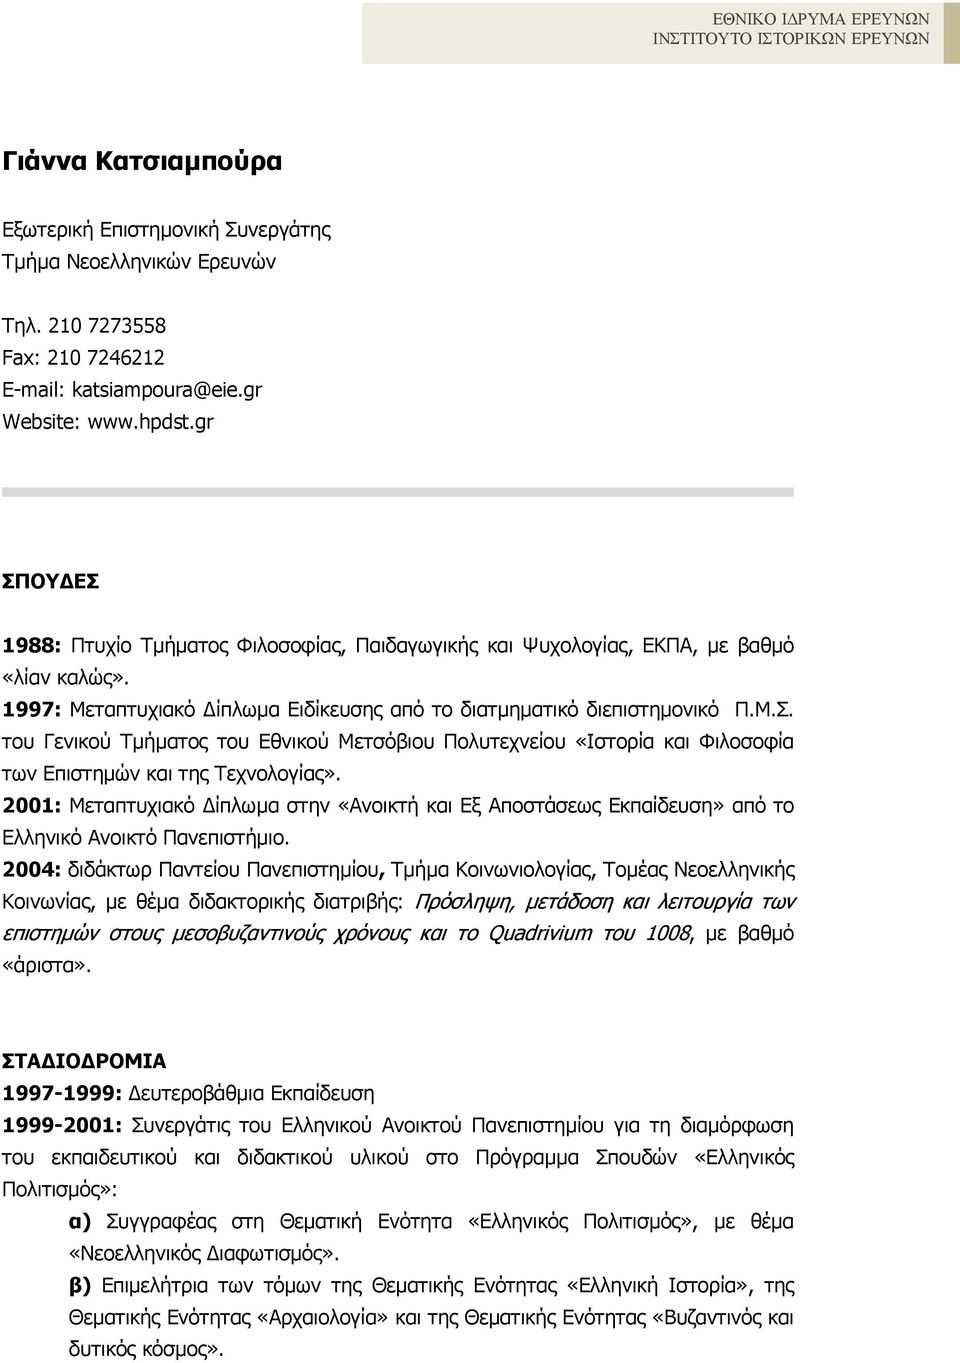 2001: Μεταπτυχιακό ίπλωµα στην «Ανοικτή και Εξ Αποστάσεως Εκπαίδευση» από το Ελληνικό Ανοικτό Πανεπιστήµιο.